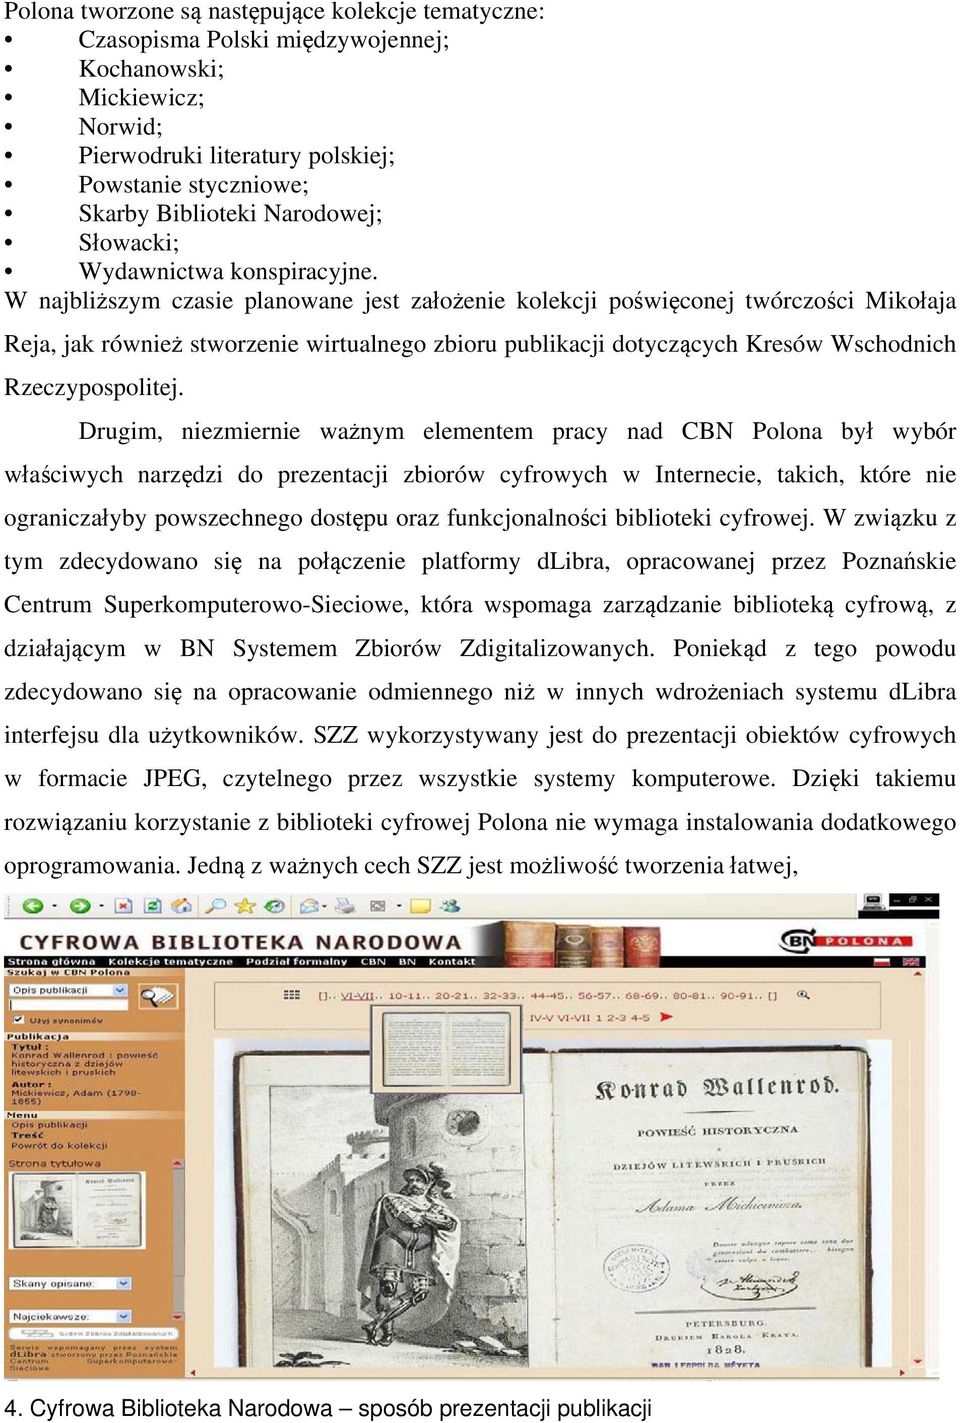 W najbliższym czasie planowane jest założenie kolekcji poświęconej twórczości Mikołaja Reja, jak również stworzenie wirtualnego zbioru publikacji dotyczących Kresów Wschodnich Rzeczypospolitej.